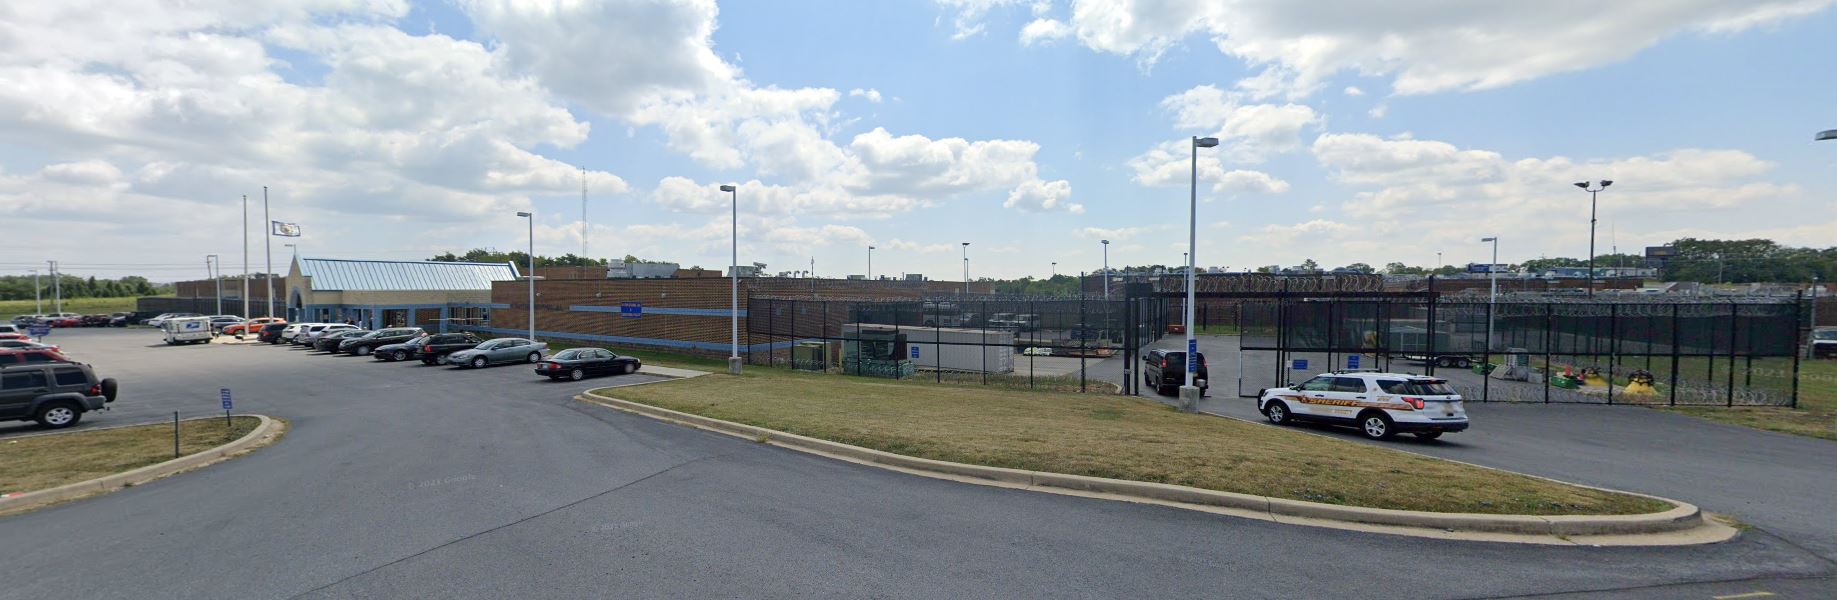 Photos Eastern Regional Jail & Correctional Facility 2